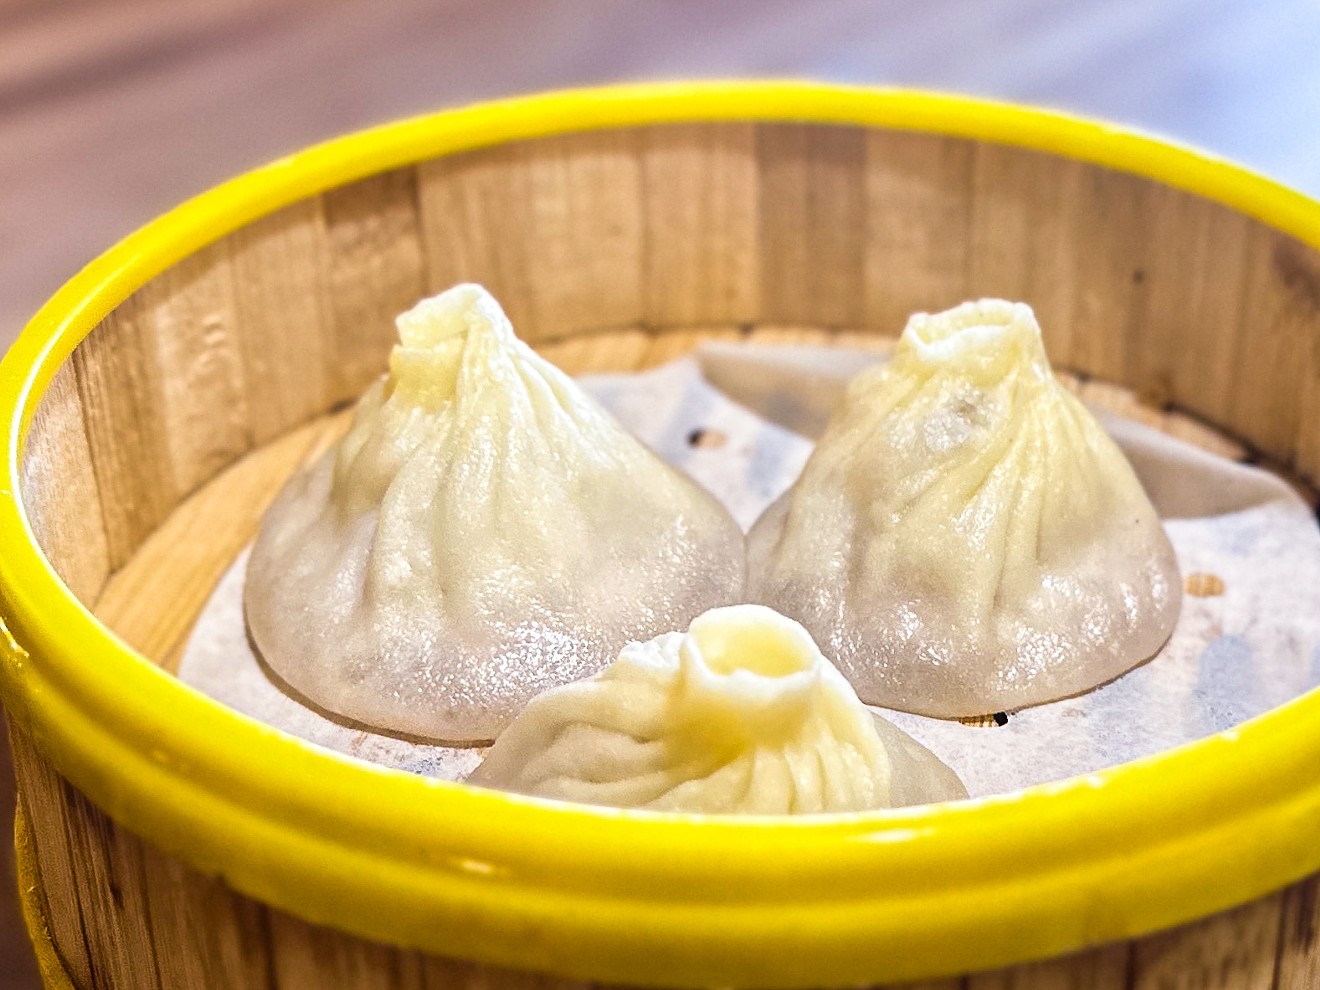 Xialong bao: soup dumplings that didn't scald.